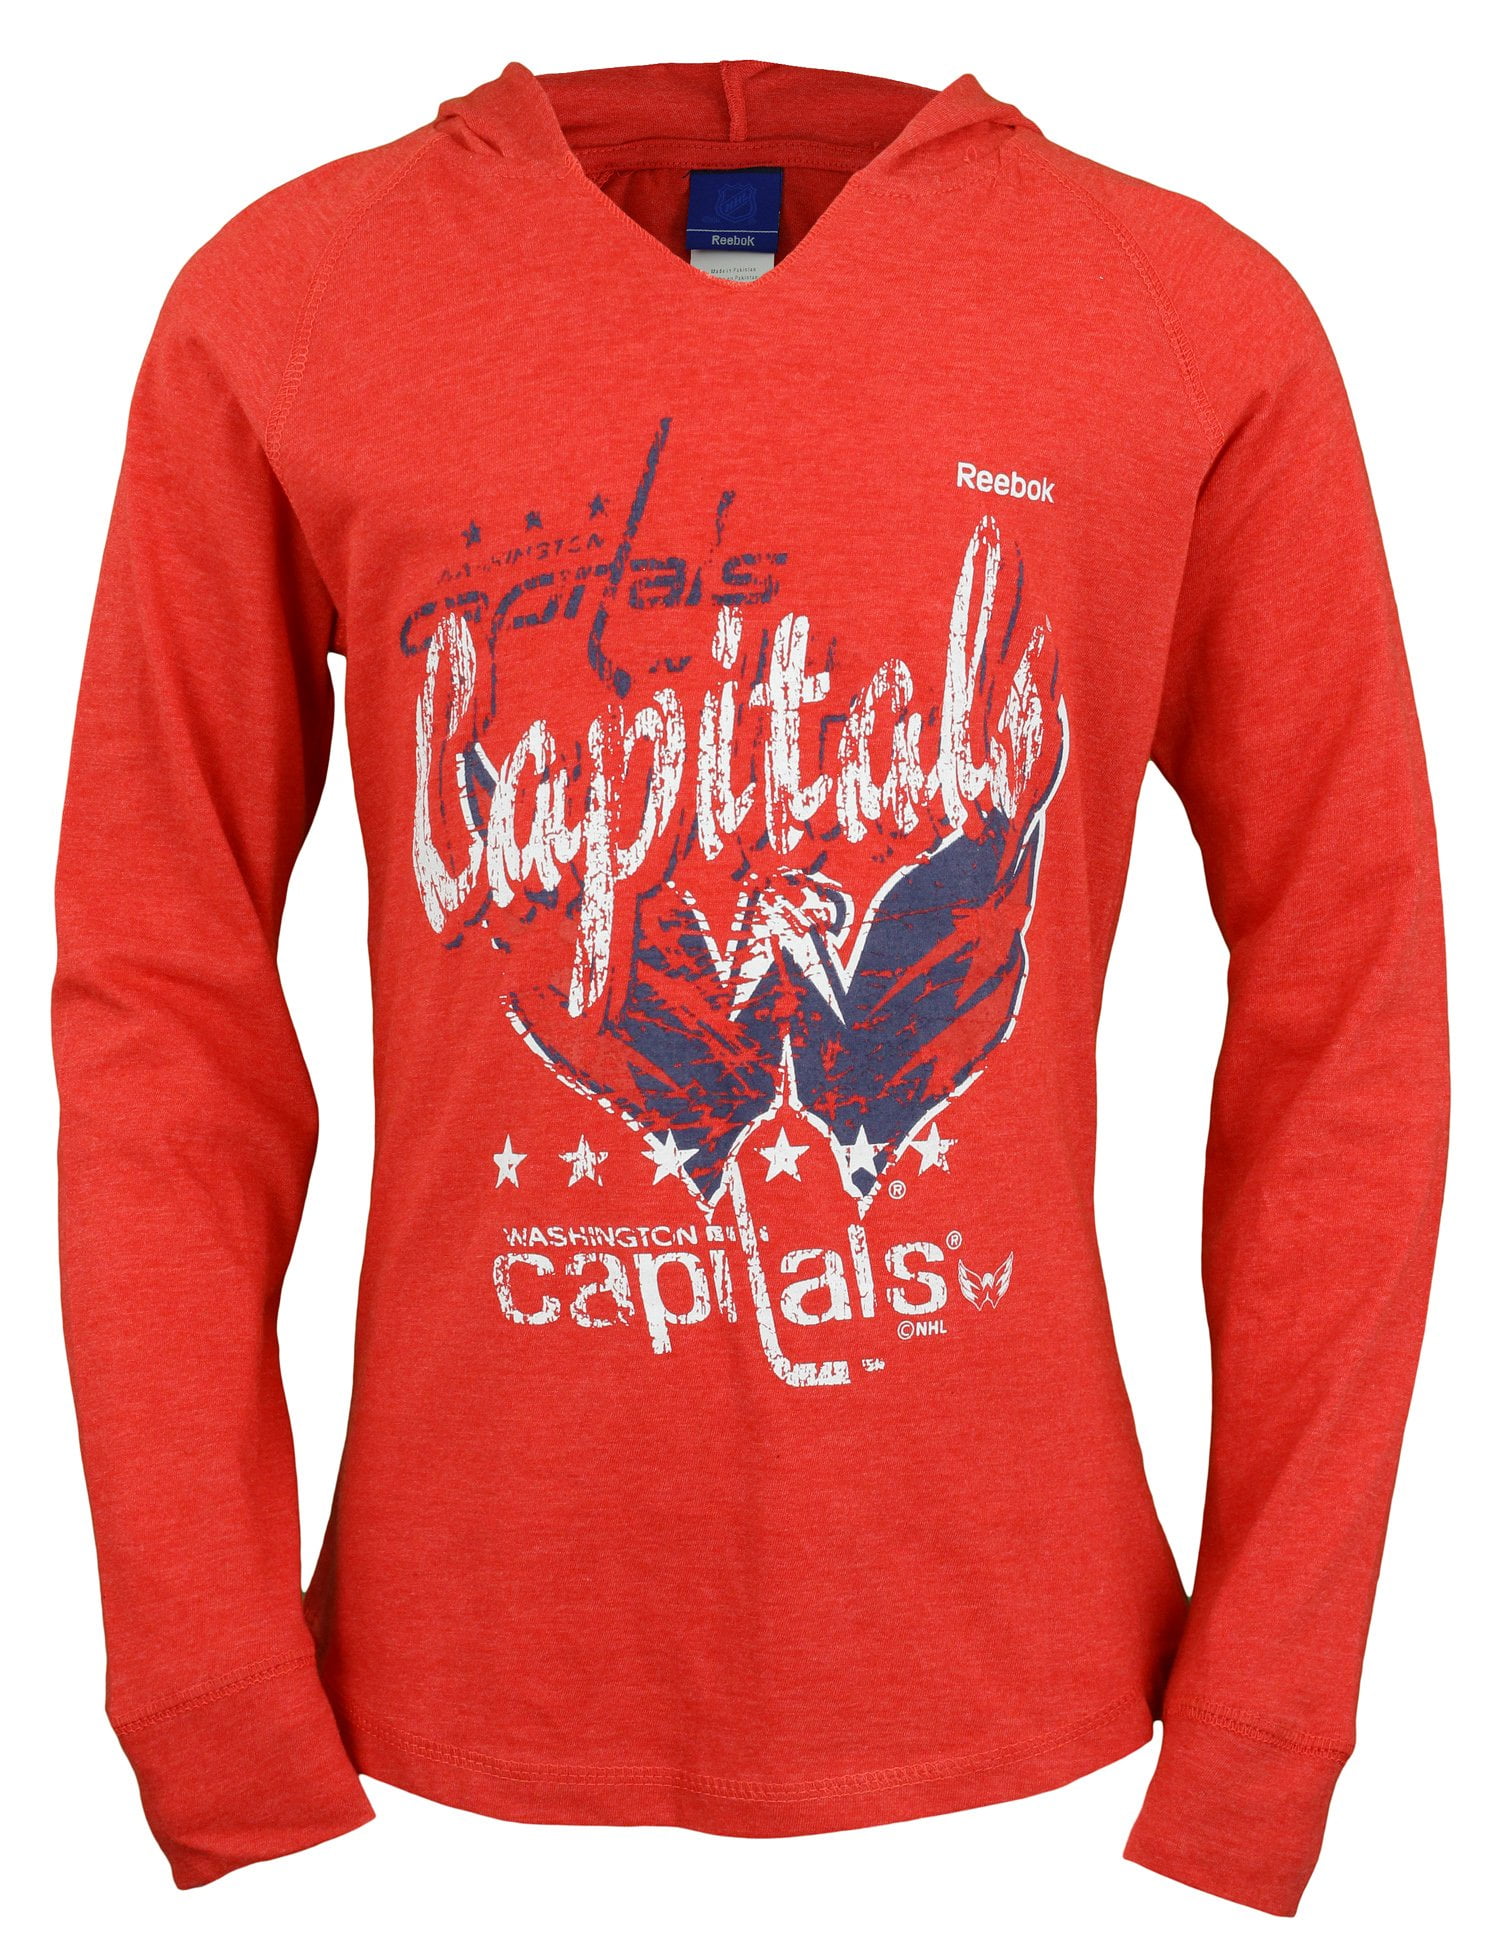 Capitals mascot apparel